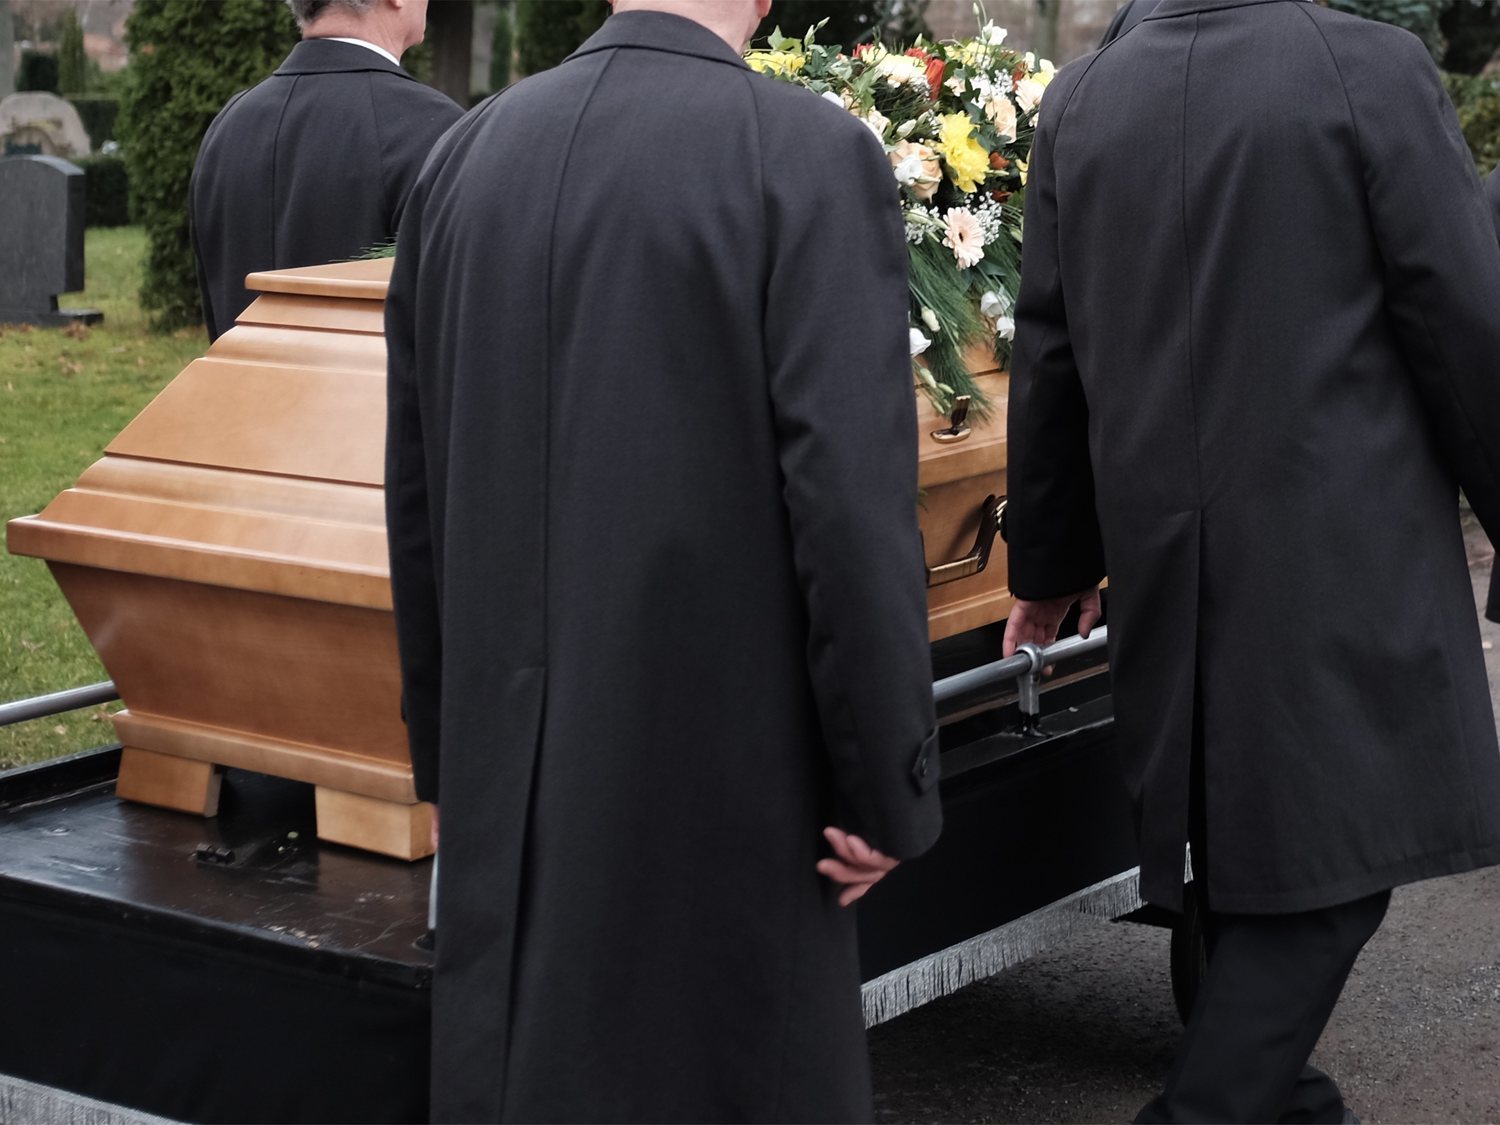 La tremenda broma de un hombre en su propio funeral que se ha hecho viral: "¡Dejadme salir!"